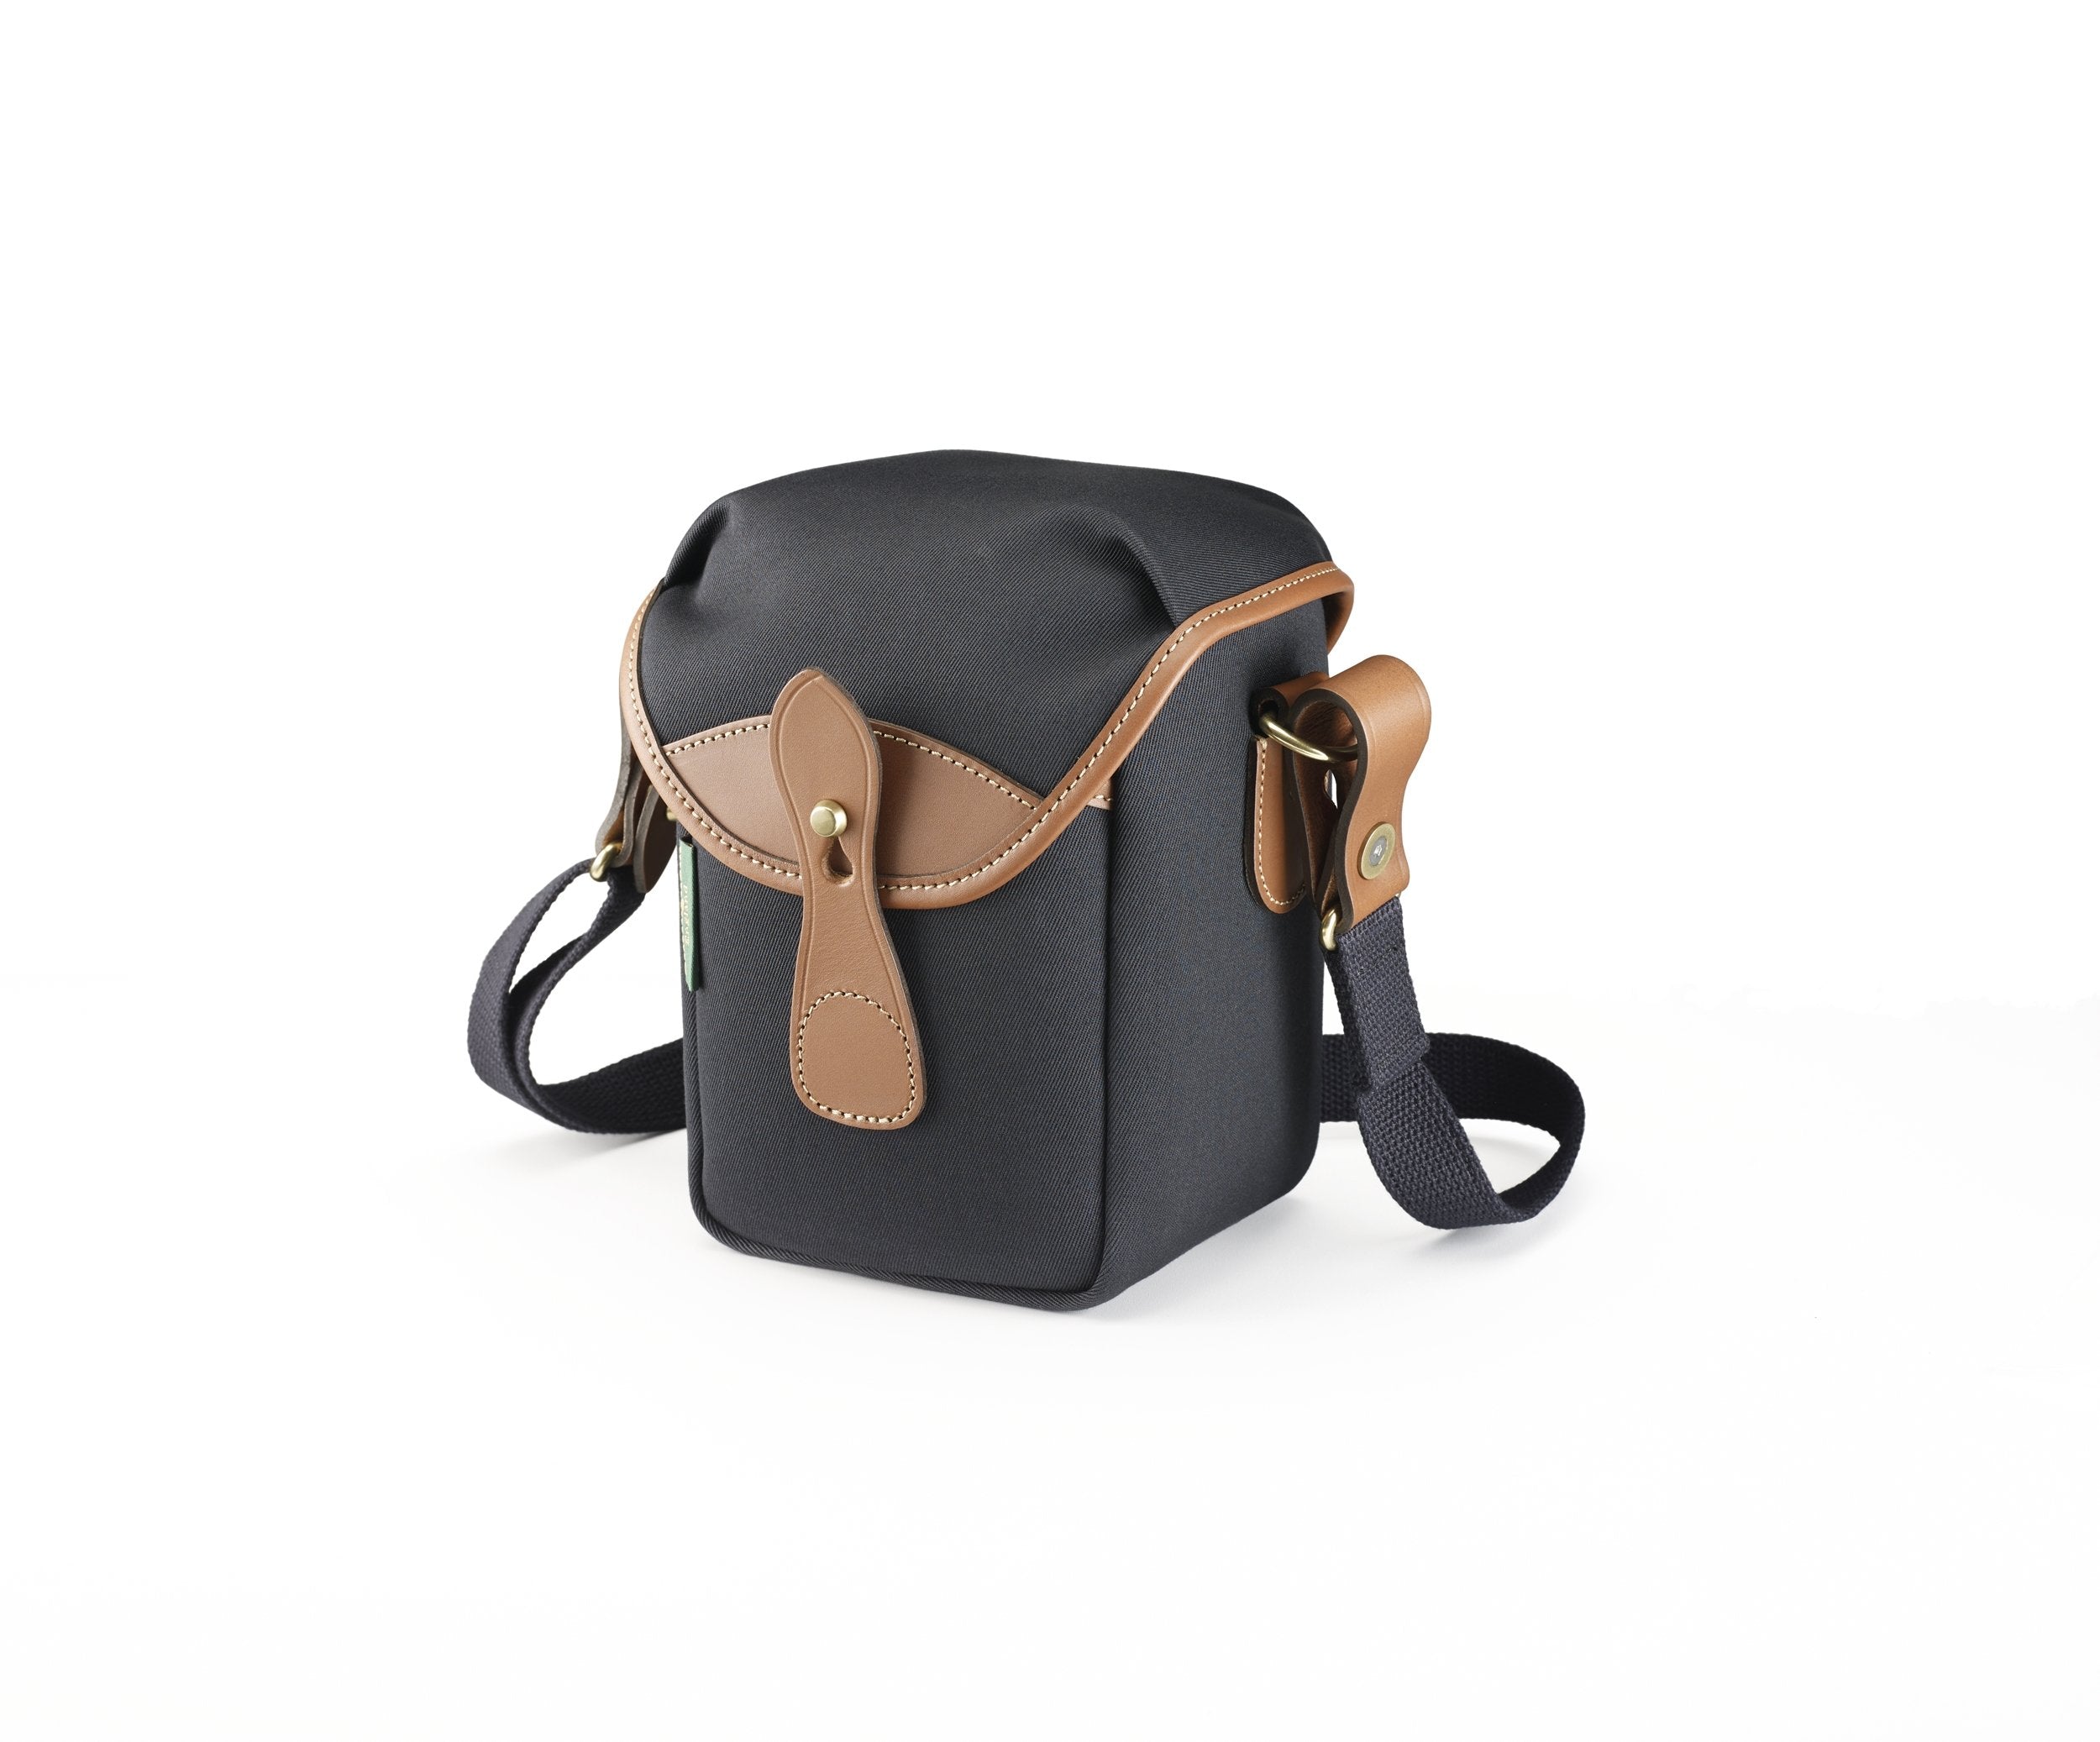 Short Bag Strap With Gold Black Silver Hardware Short Shoulder Strap  Handbag Strap Genuine Leather Bag Belt Handbag Accessories